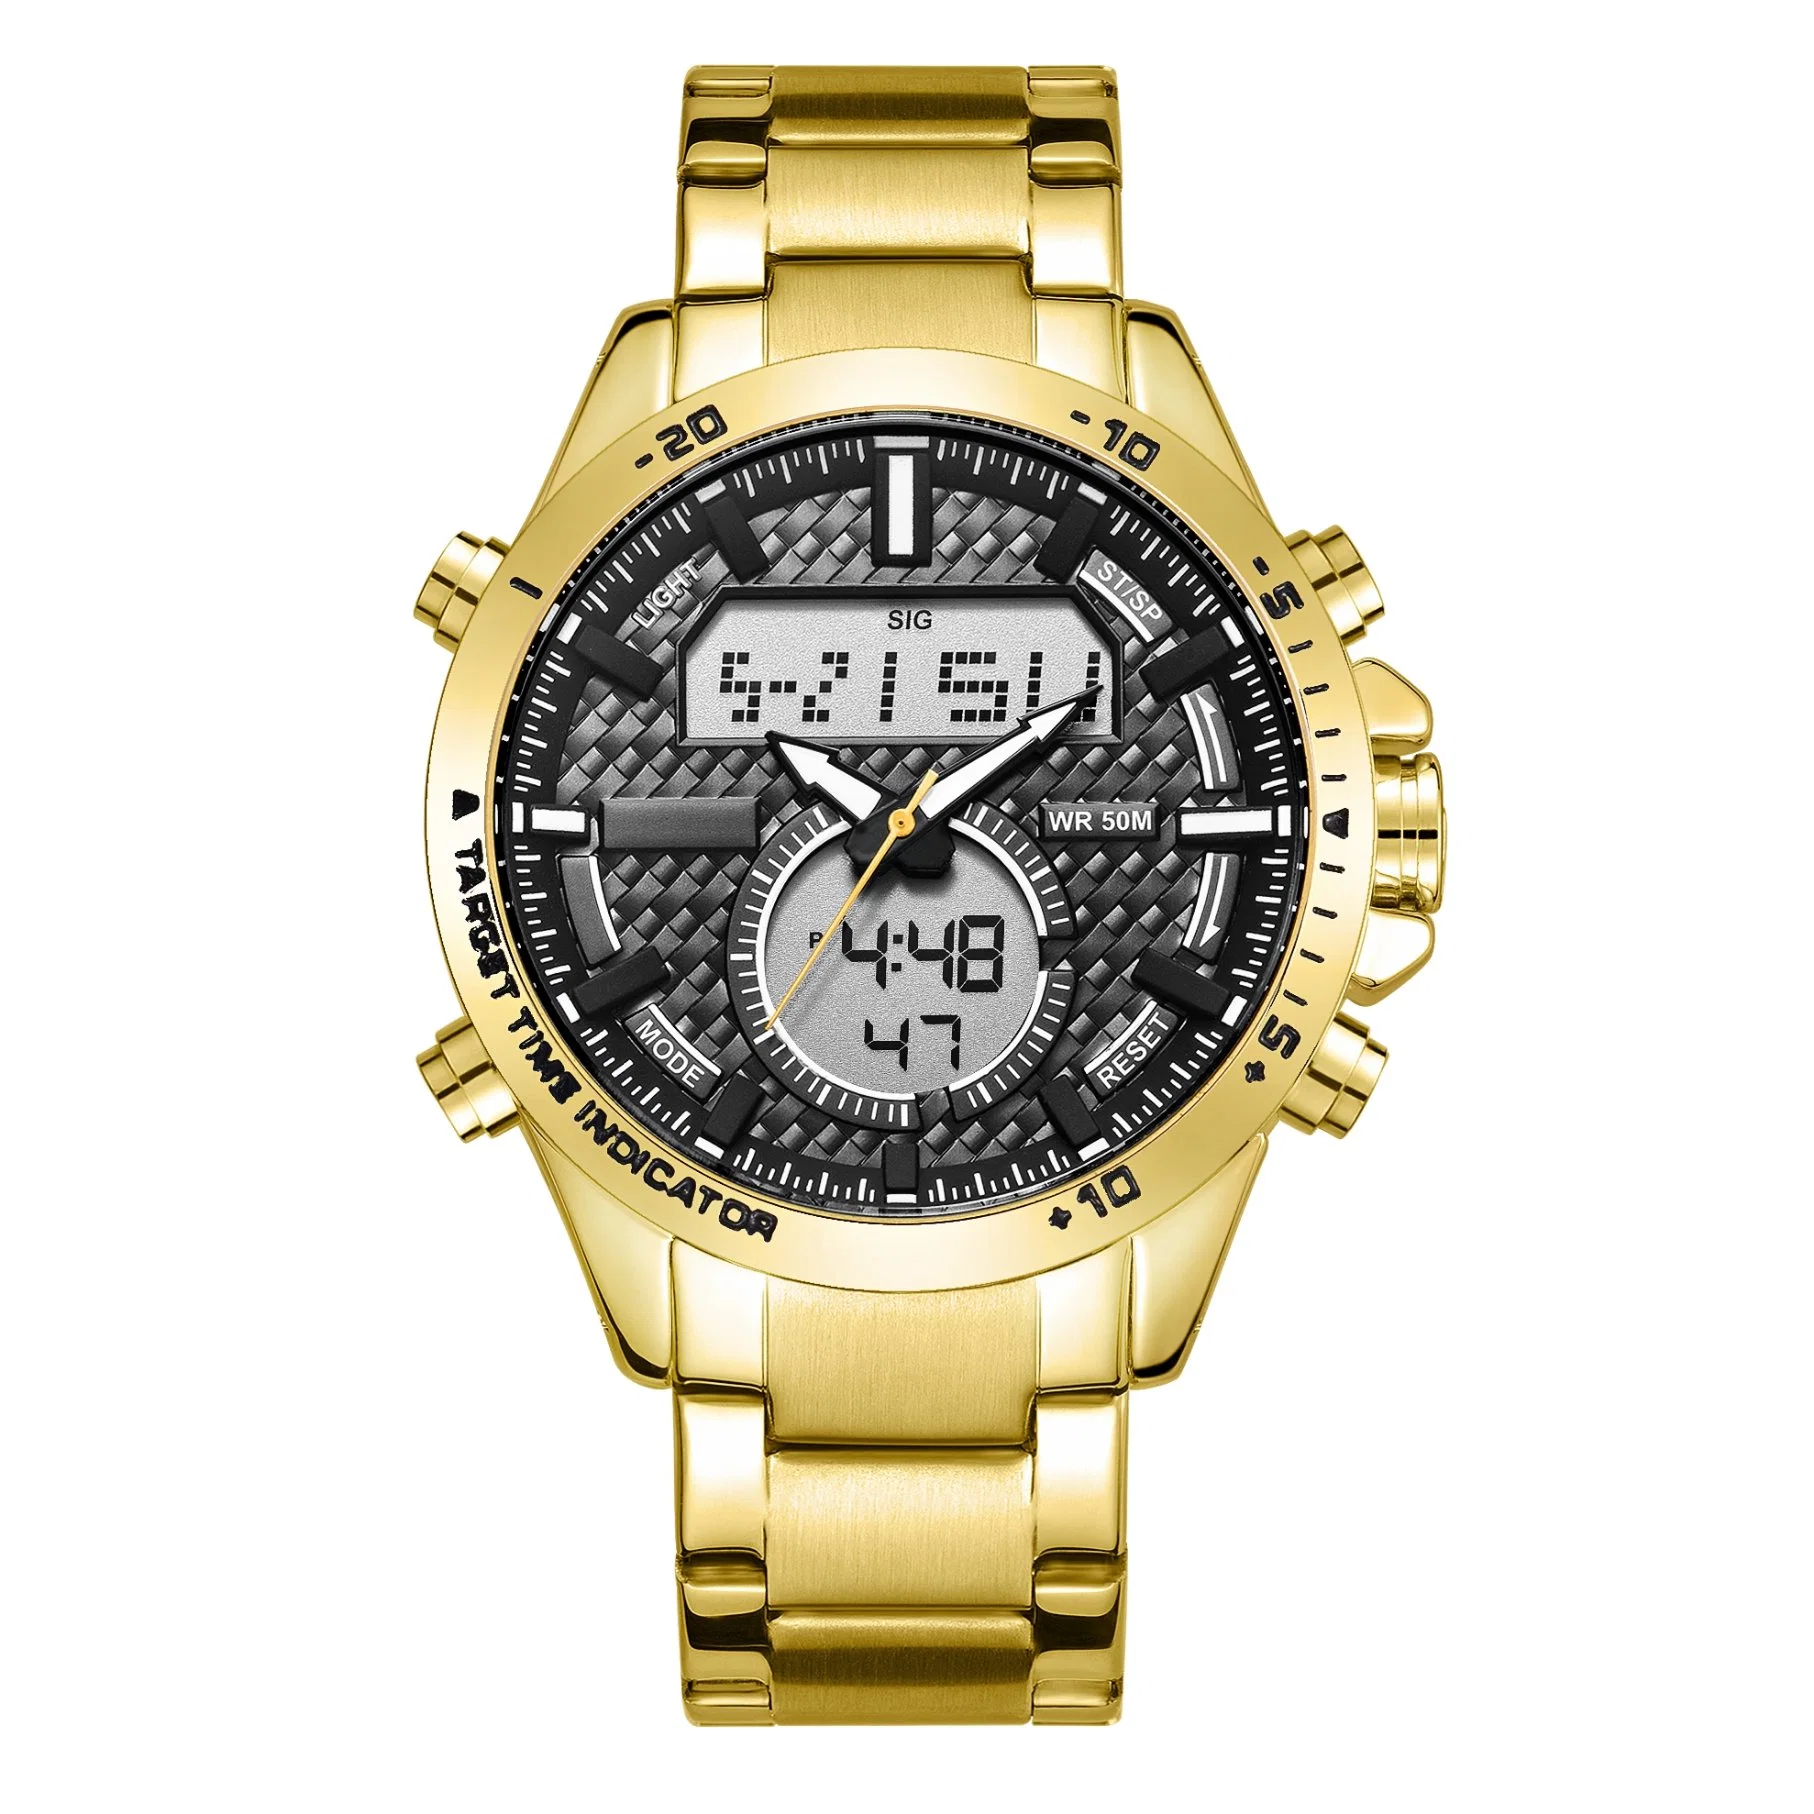 Analog-Digital Uhr für Handgelenkuhr mit Fashion Watch in China Uhr in Edelstahl Uhr